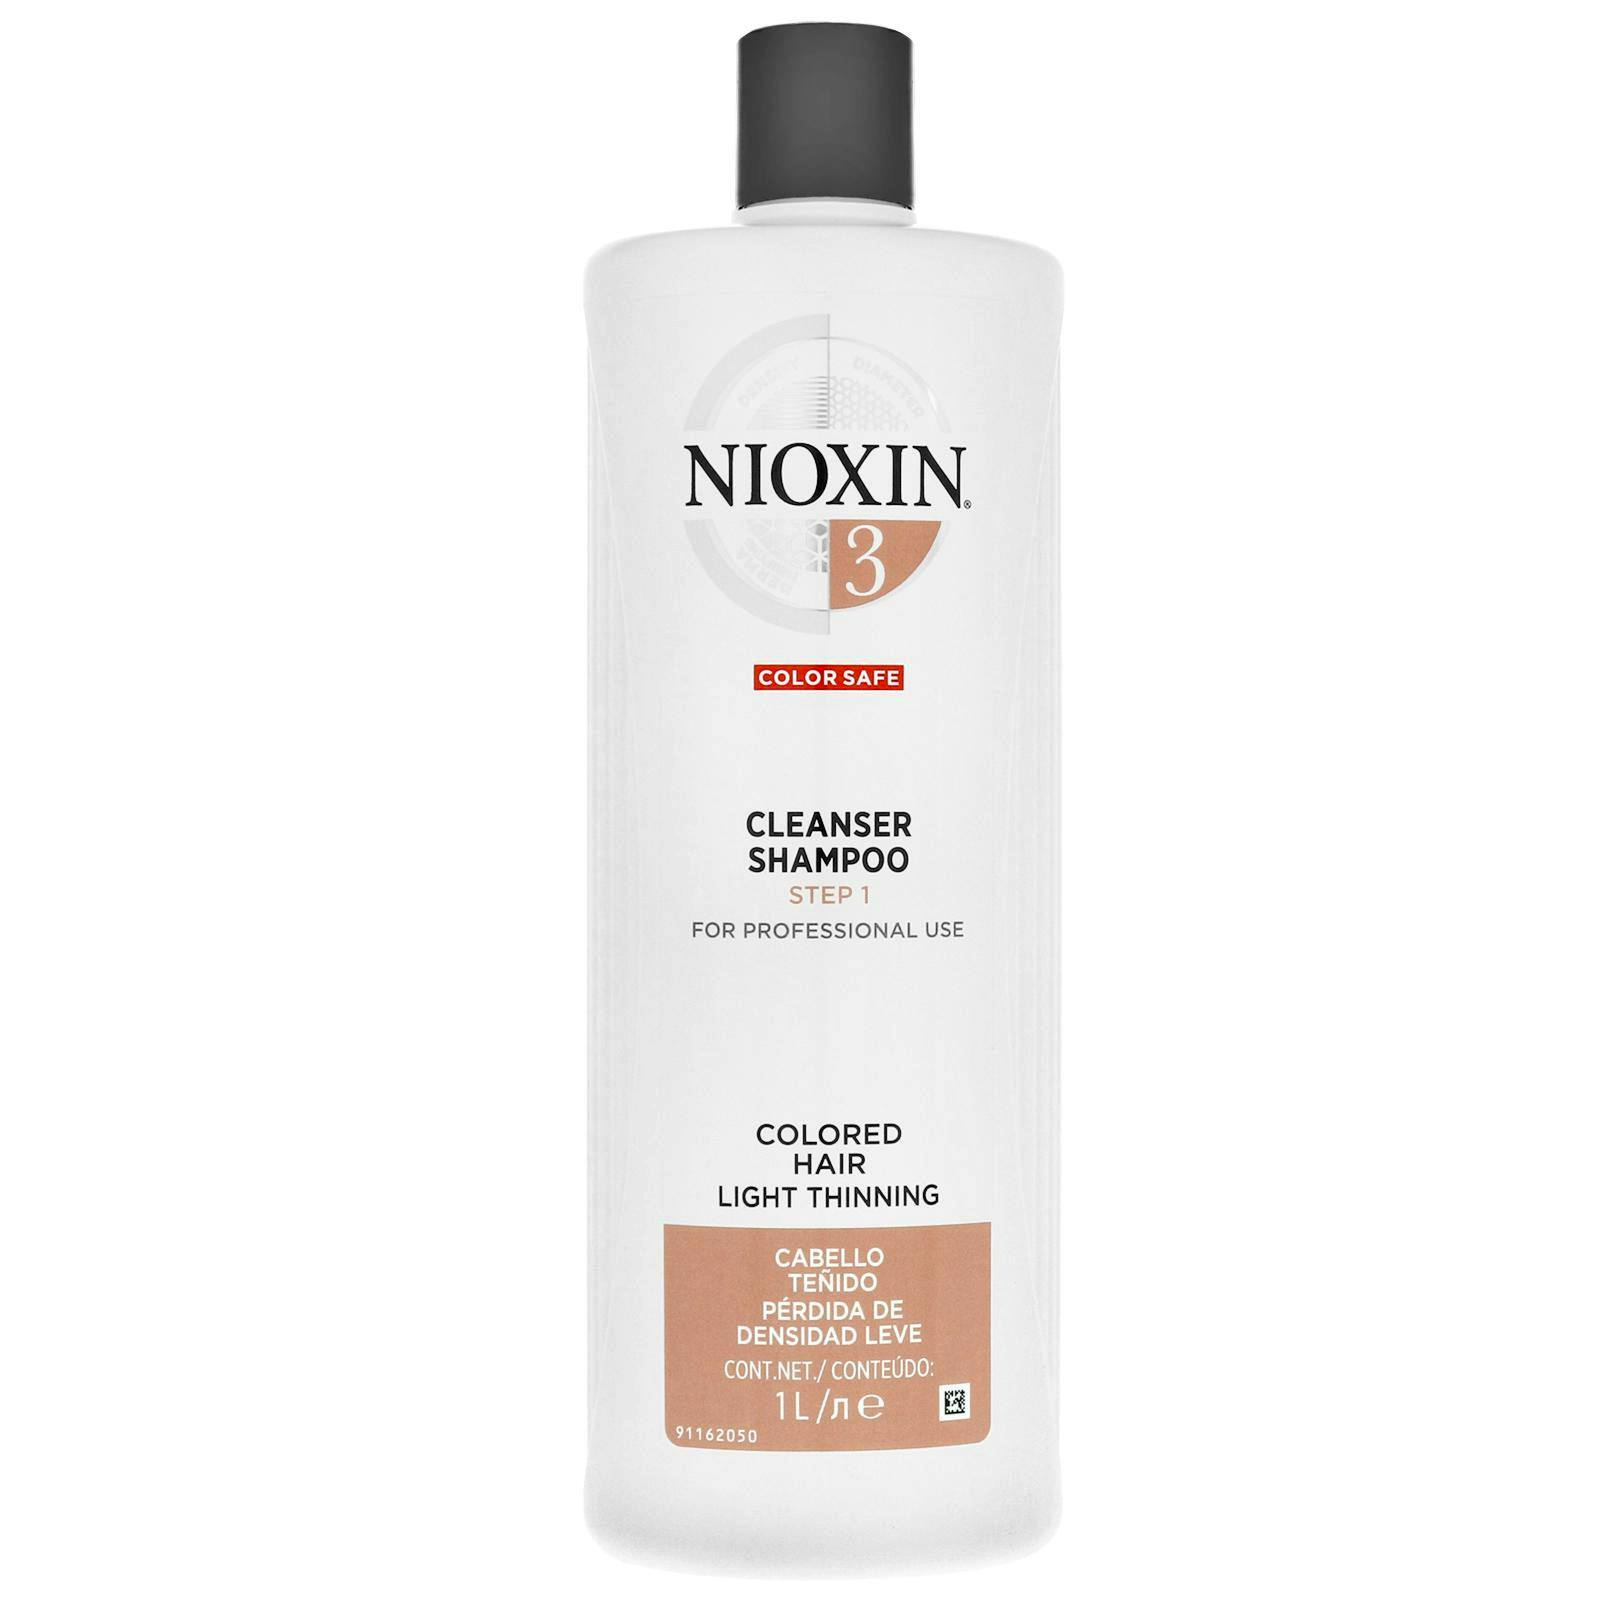 Nioxin 3 Cleanser 1000 ml - 36.49 EUR luxplus.nl